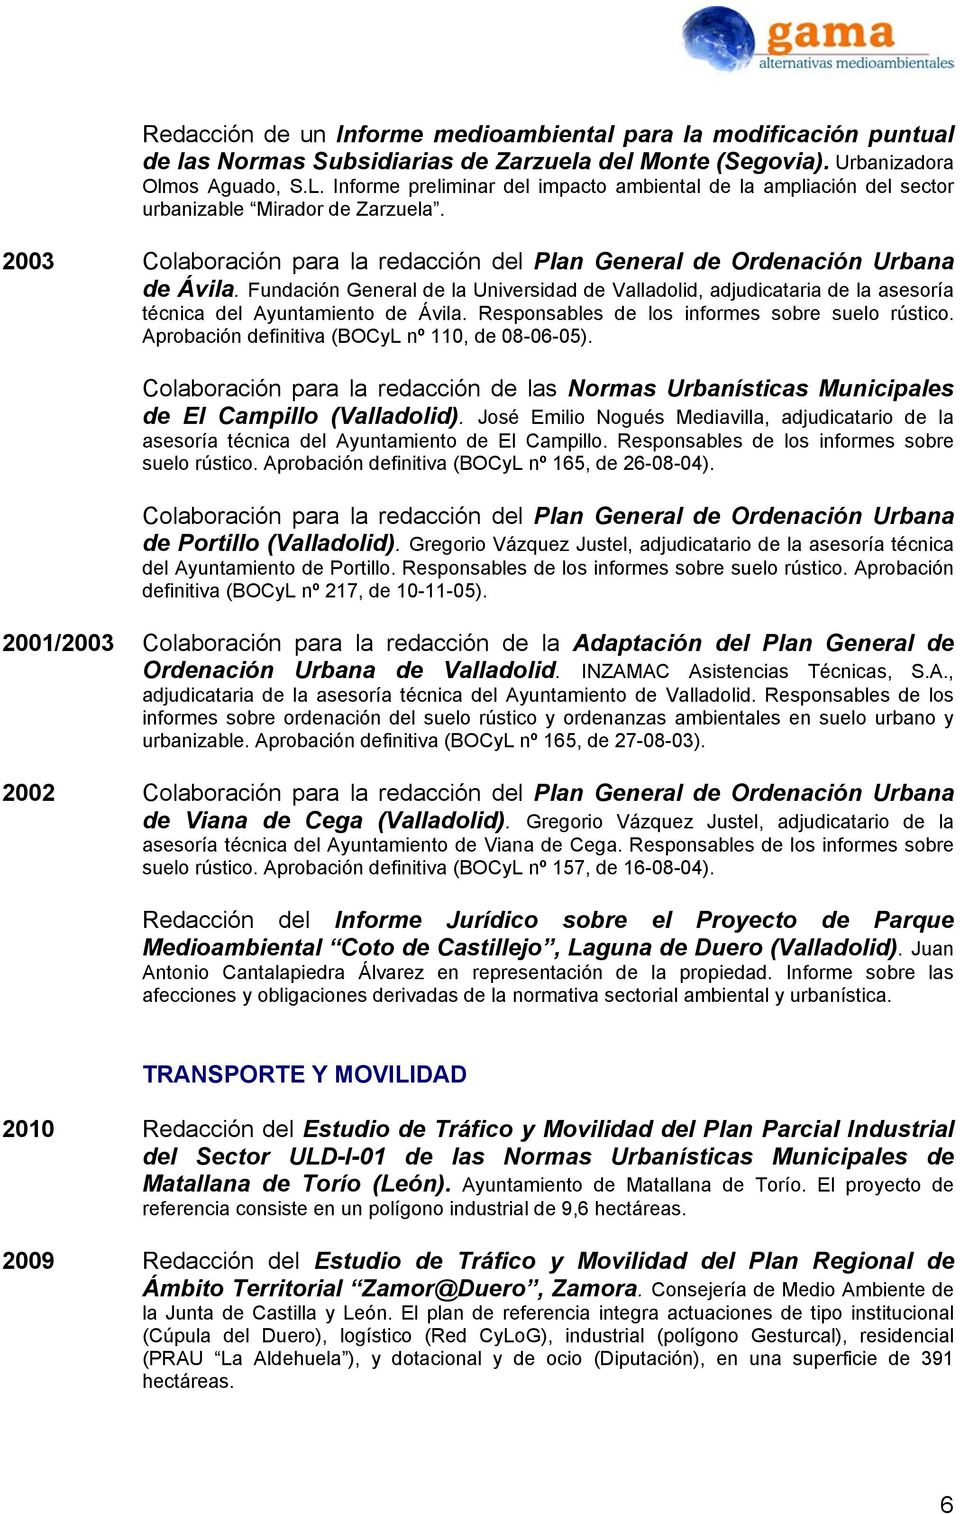 Fundación General de la Universidad de Valladolid, adjudicataria de la asesoría técnica del Ayuntamiento de Ávila. Responsables de los informes sobre suelo rústico.